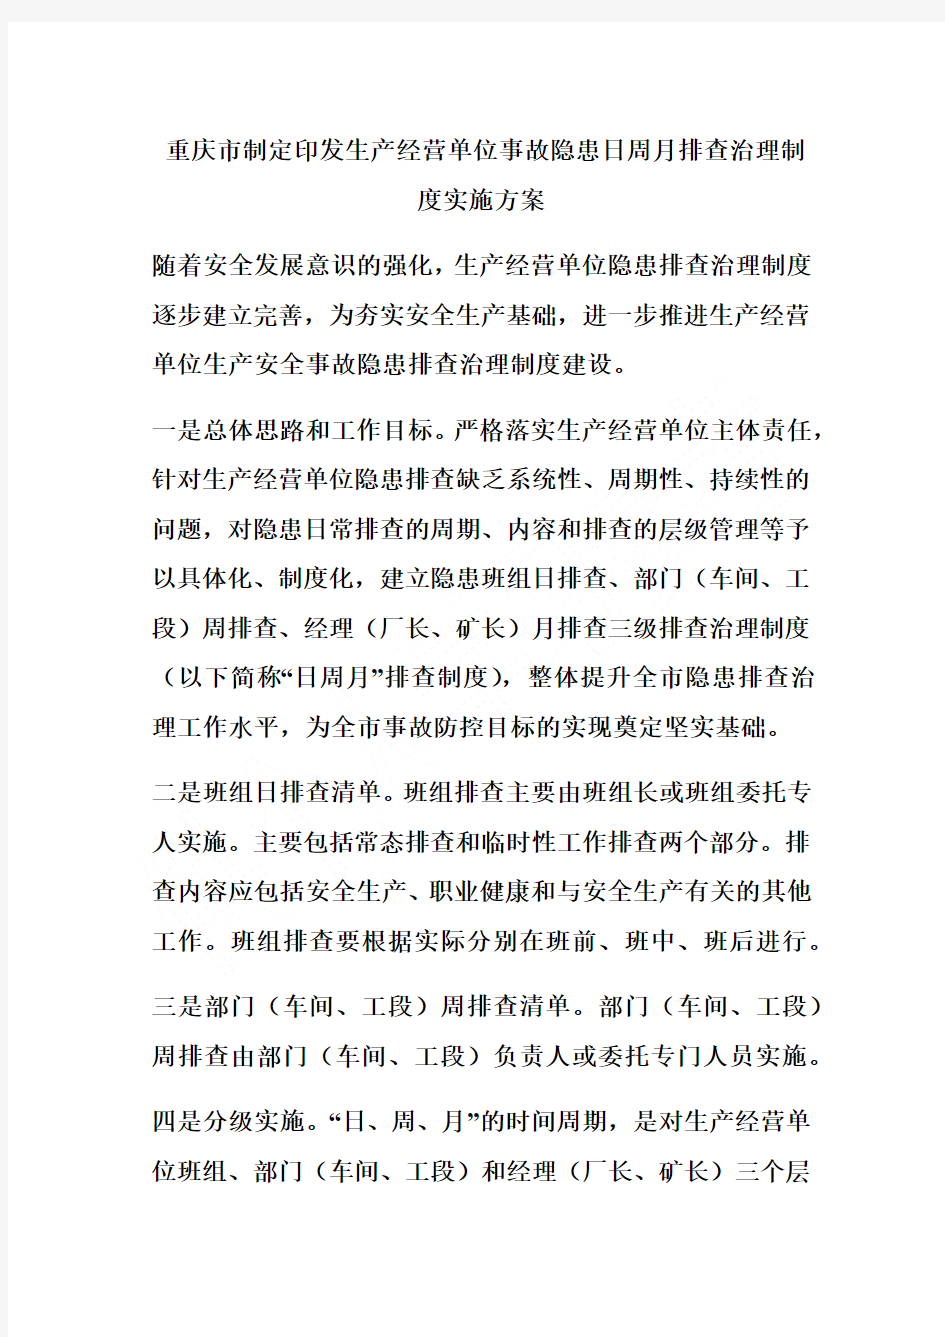 重庆市制定印发生产经营单位事故隐患日周月排查治理制度实施方案